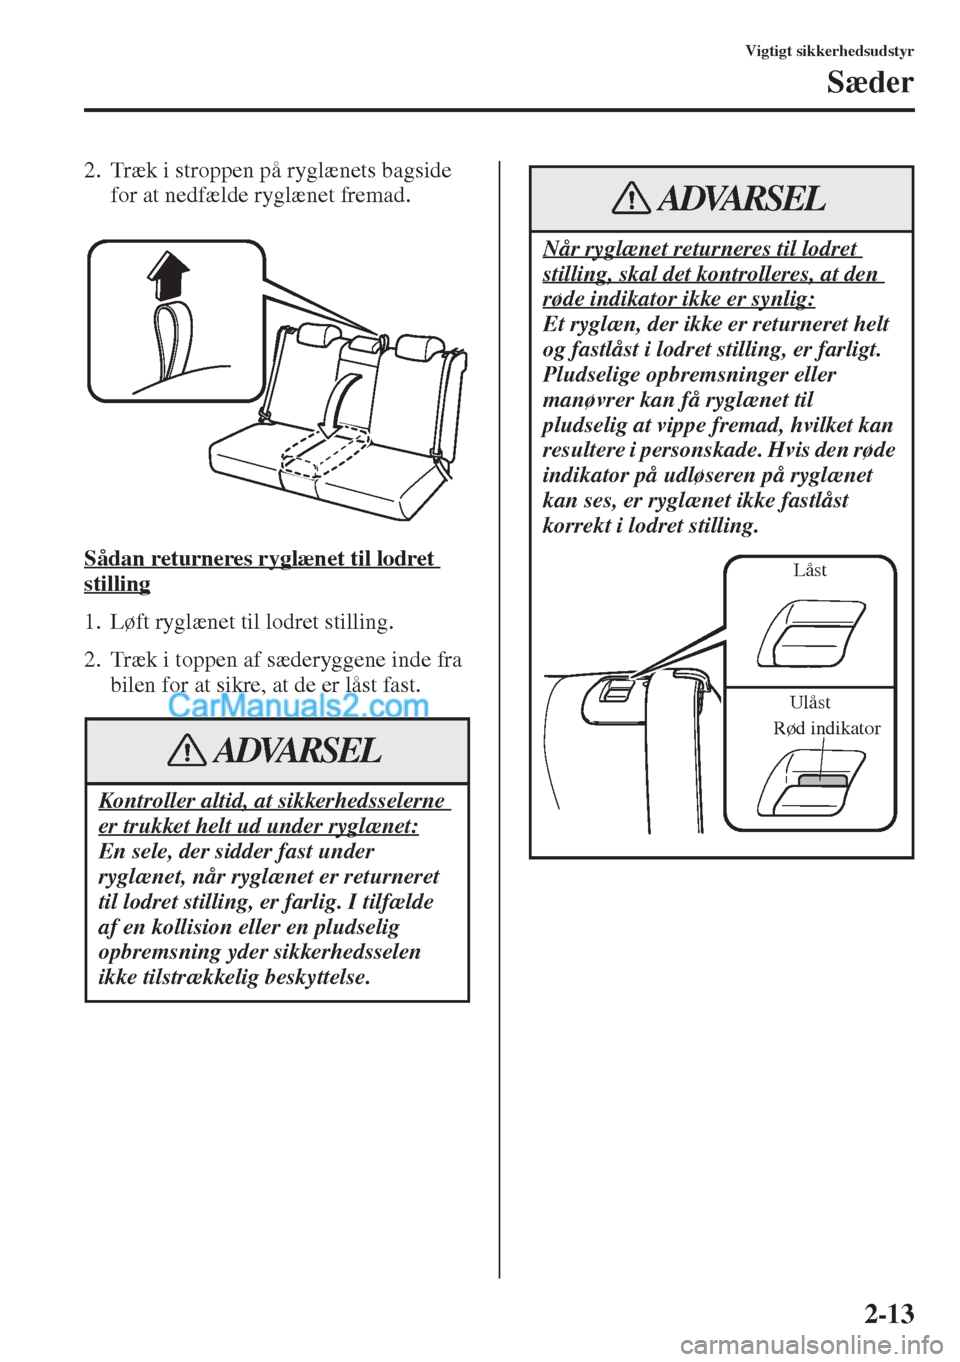 MAZDA MODEL CX-5 2015  Instruktionsbog (in Danish) 2-13
Vigtigt sikkerhedsudstyr
Sæder
2. Træk i stroppen på ryglænets bagside 
for at nedfælde ryglænet fremad.
Sådan returneres ryglænet til lodret 
stilling
1. Løft ryglænet til lodret still